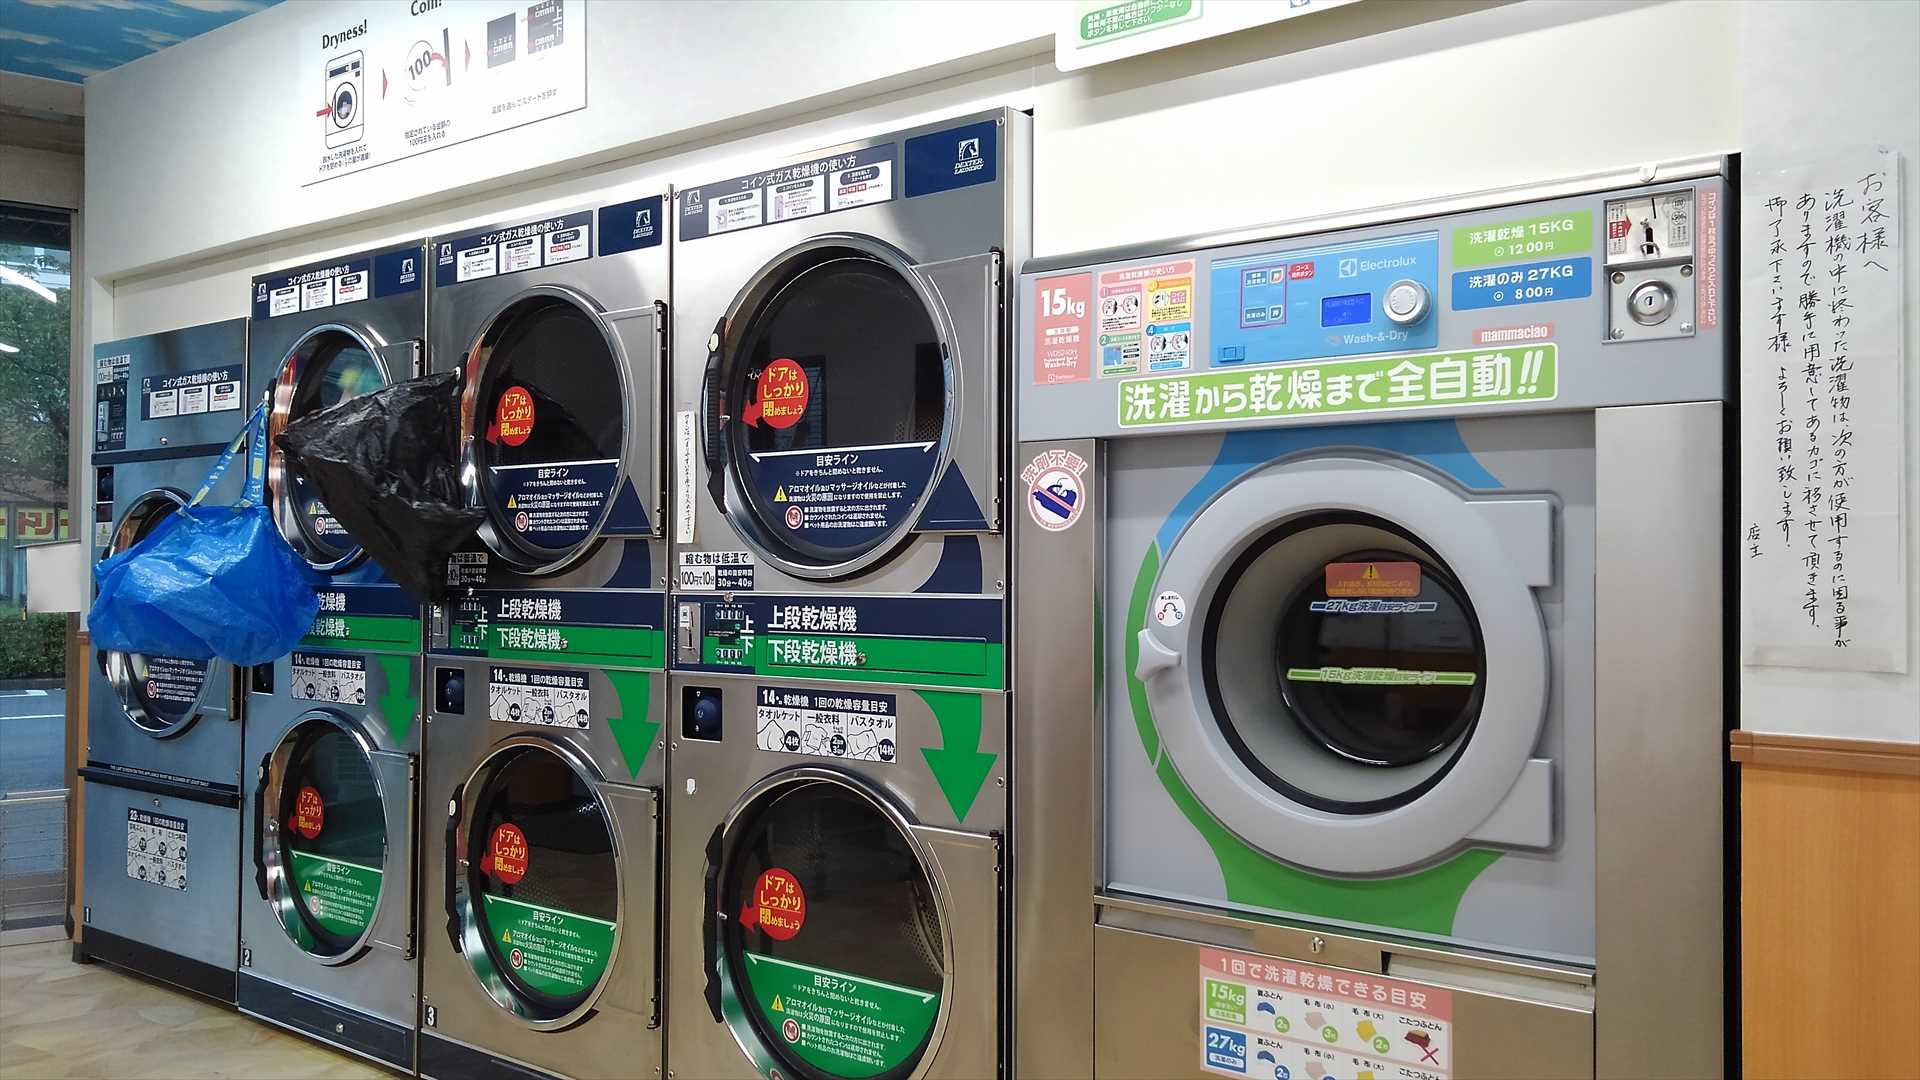 「大型コインランドリーマンマチャオ桜新町店」(東京都世田谷区)のエレクトロラックス製洗濯乾燥機